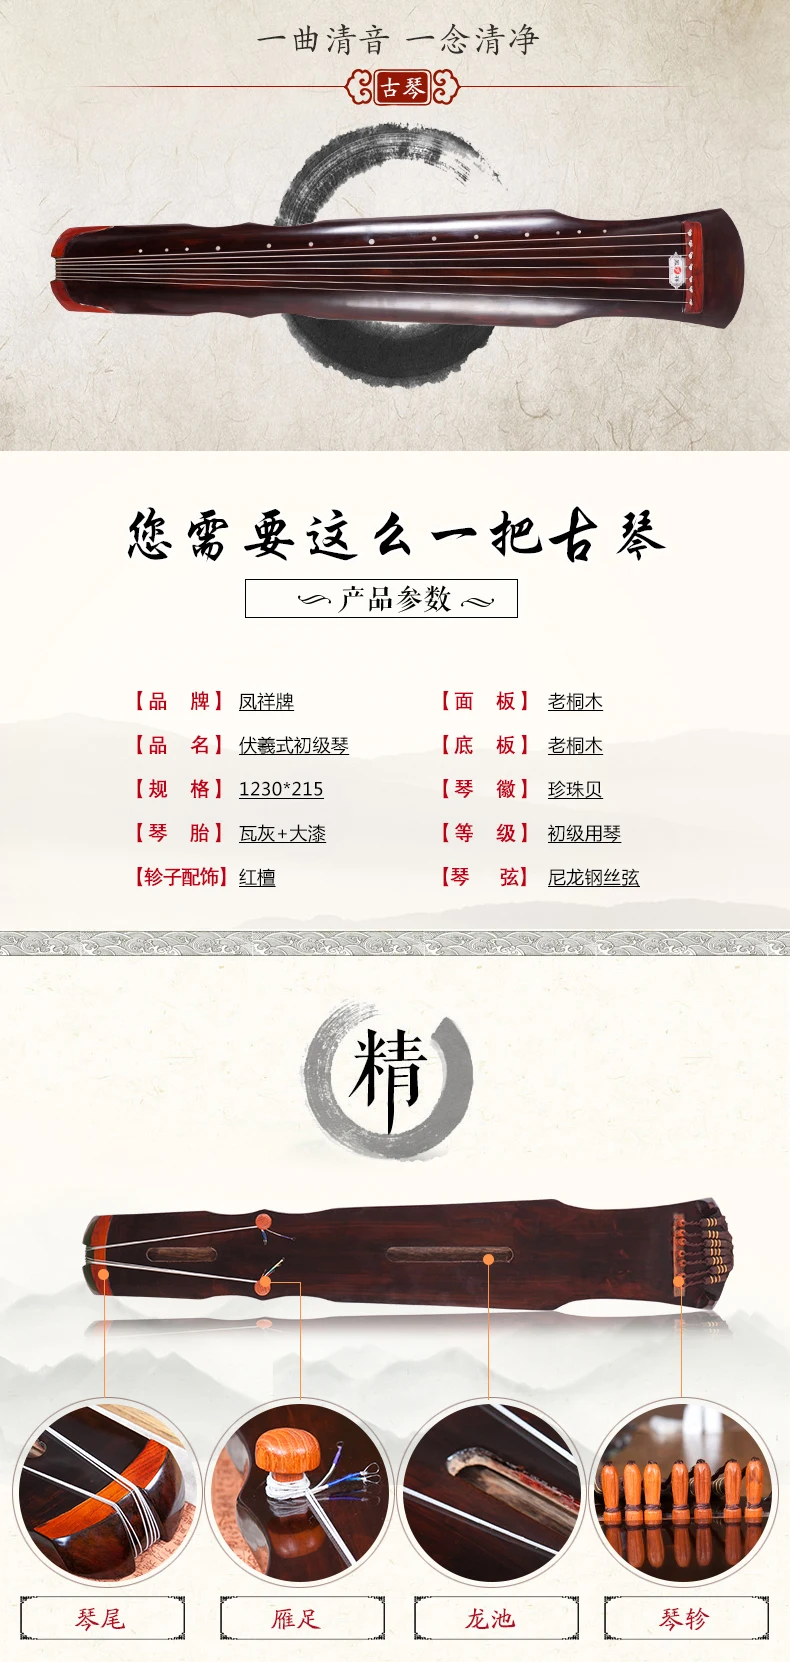 Высокое качество Guqin Fuxi-type старая пауловния 7 струн Guqin мастер рекомендуется для начинающих профессиональная практика китайский Zither